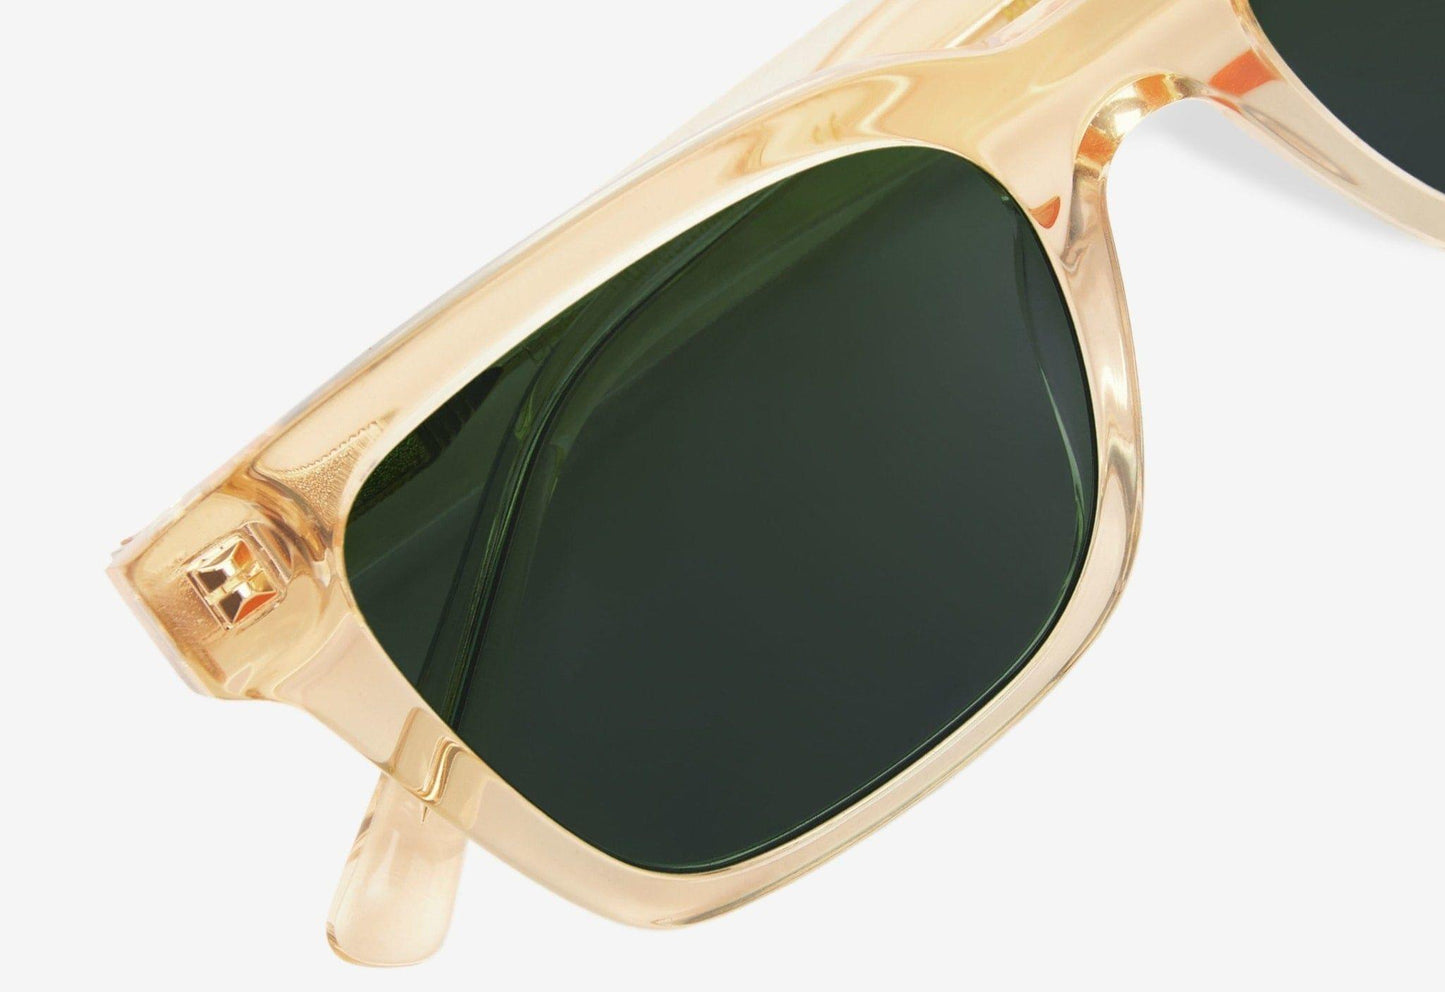 Dean, Rectangular sunglasses for men and women green lens UV400 protection